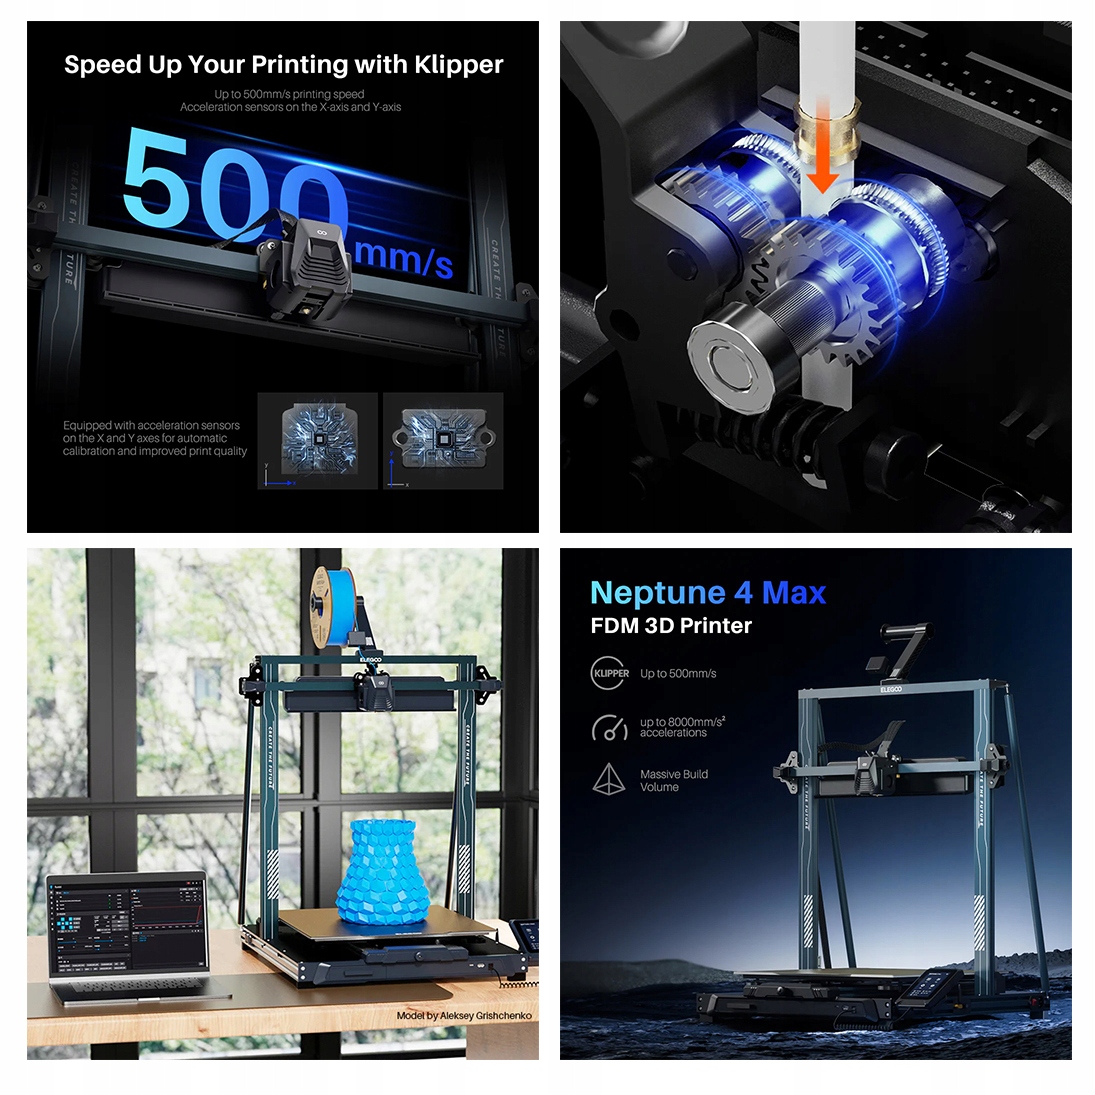 Elegoo Neptune 4 MAX Drukarka 3D |FDM| Filament| WIFI | Największy Druk XXL Rodzaj drukarka 3D